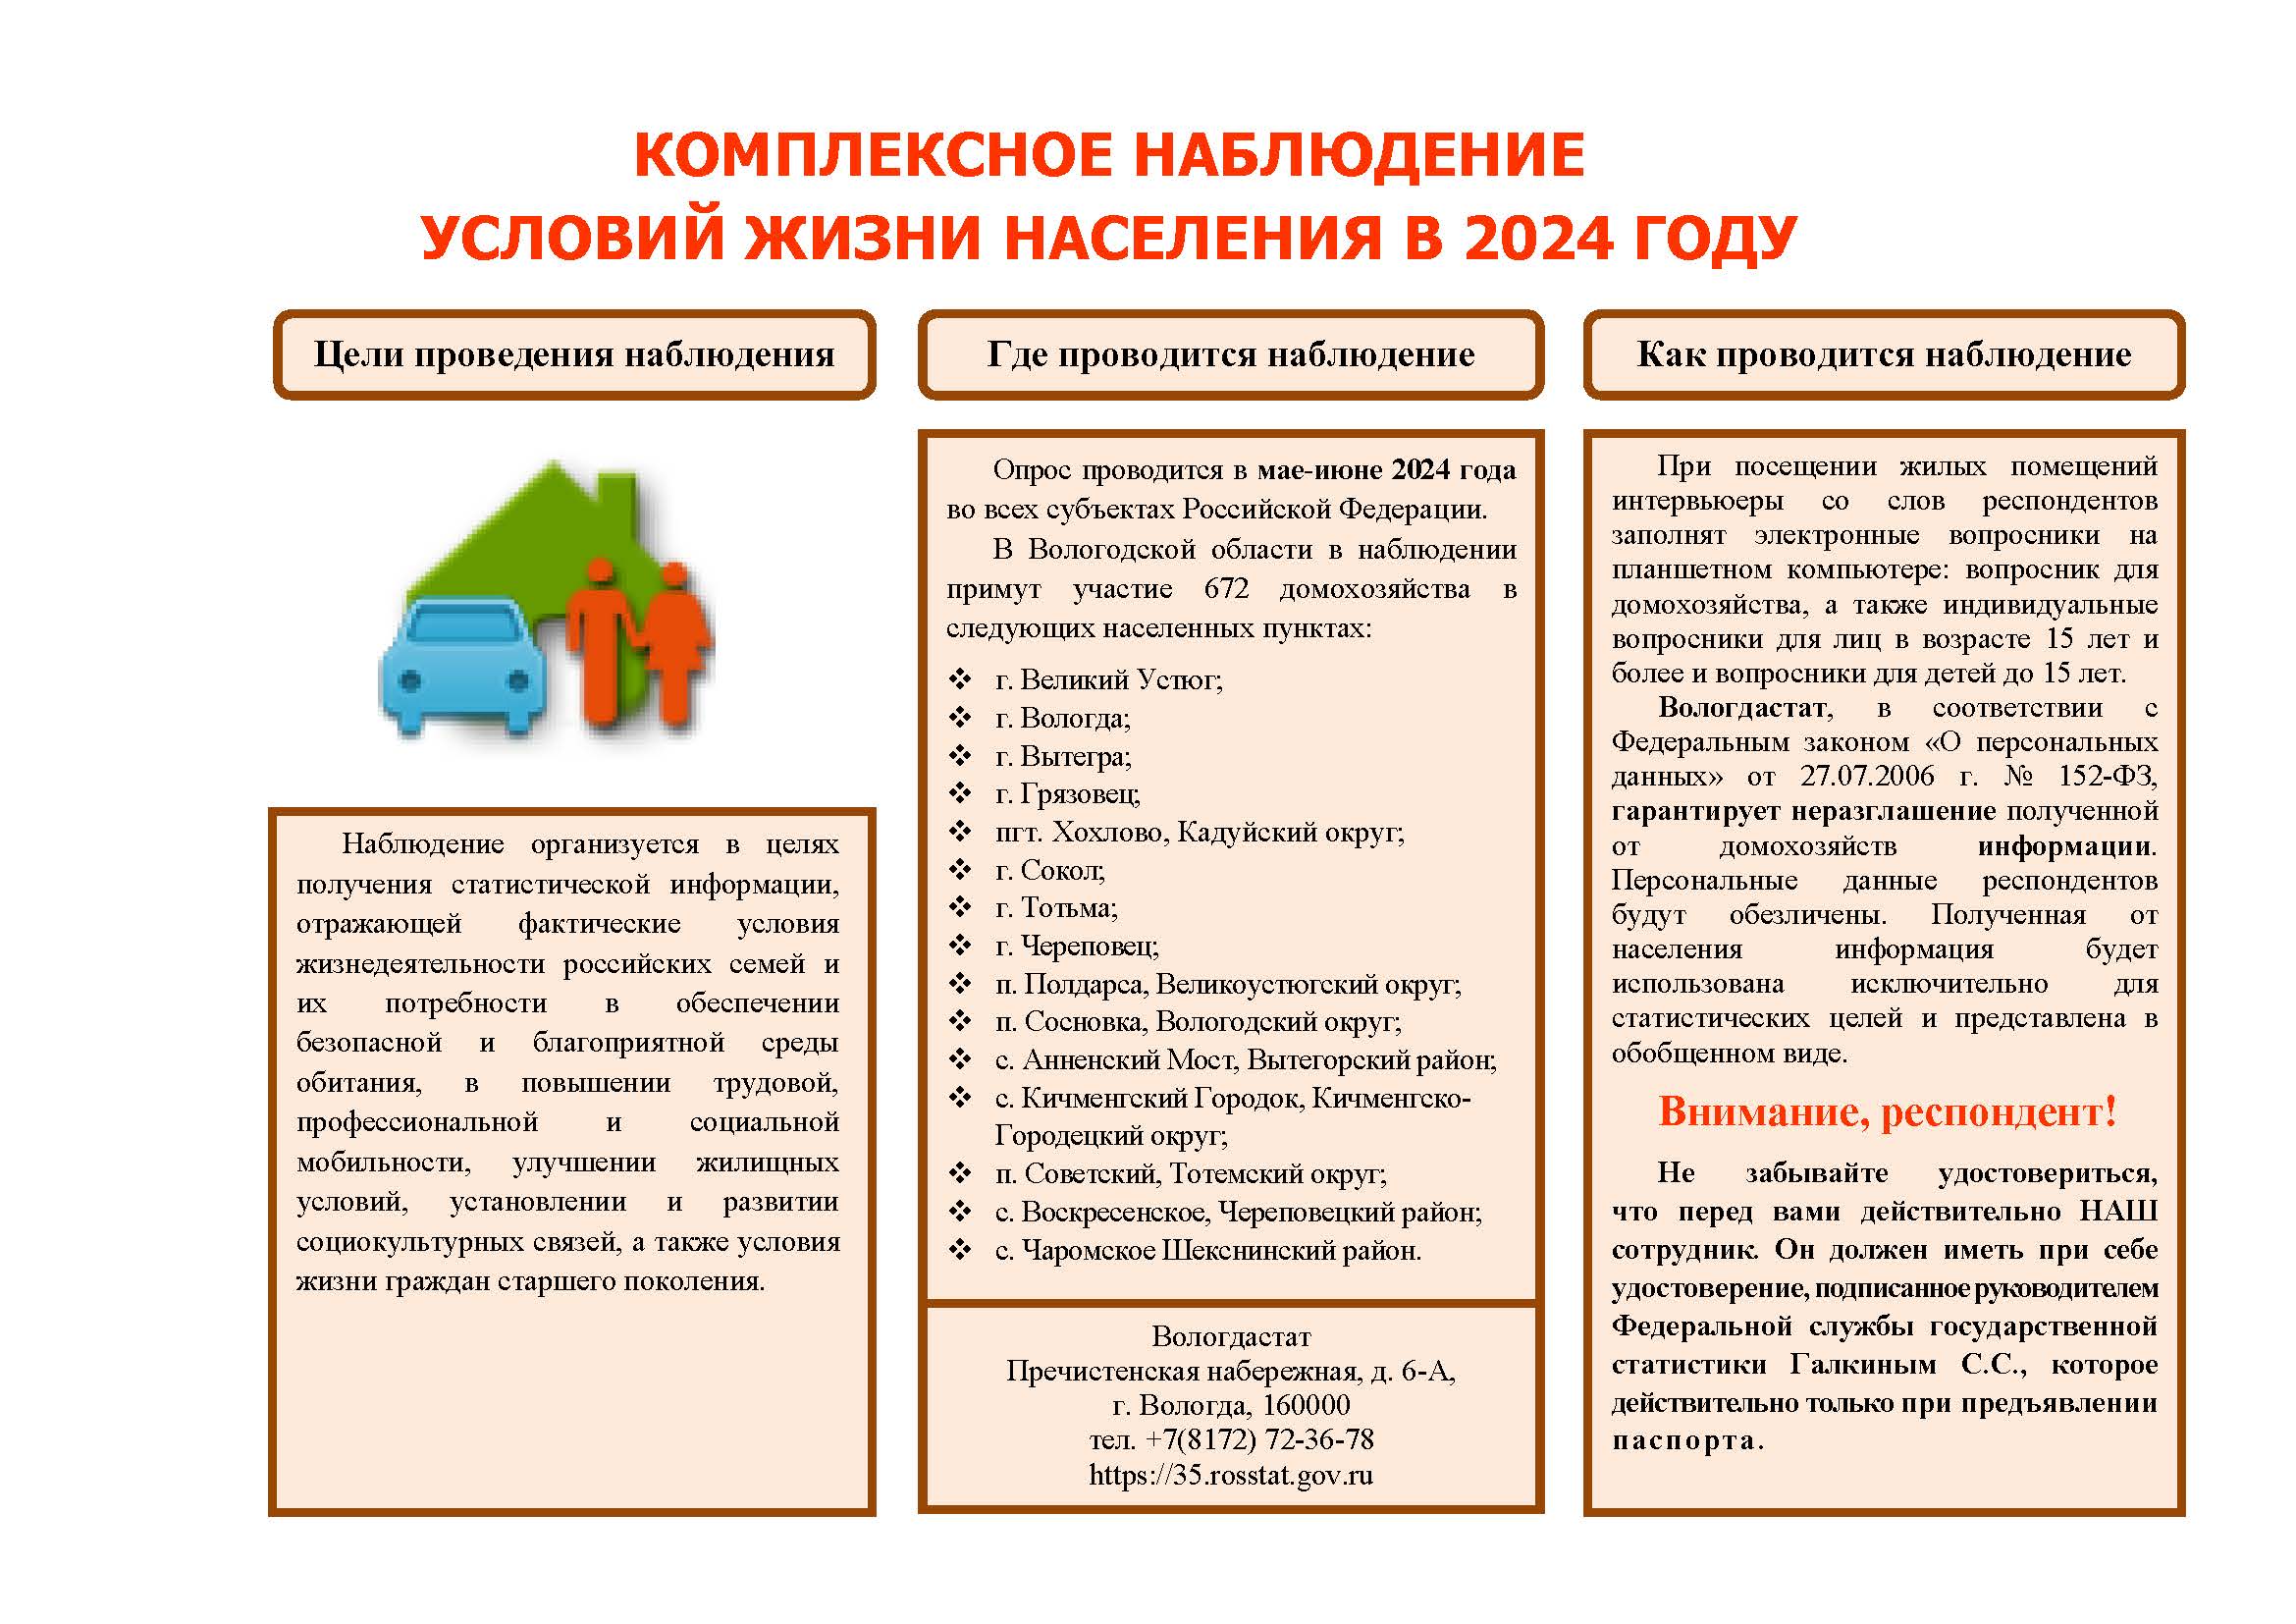 Федеральная служба государственной статистики во всех субъектах Российской Федерации, в том числе в Вологодской области, проводит Комплексное наблюдение условий жизни населения.